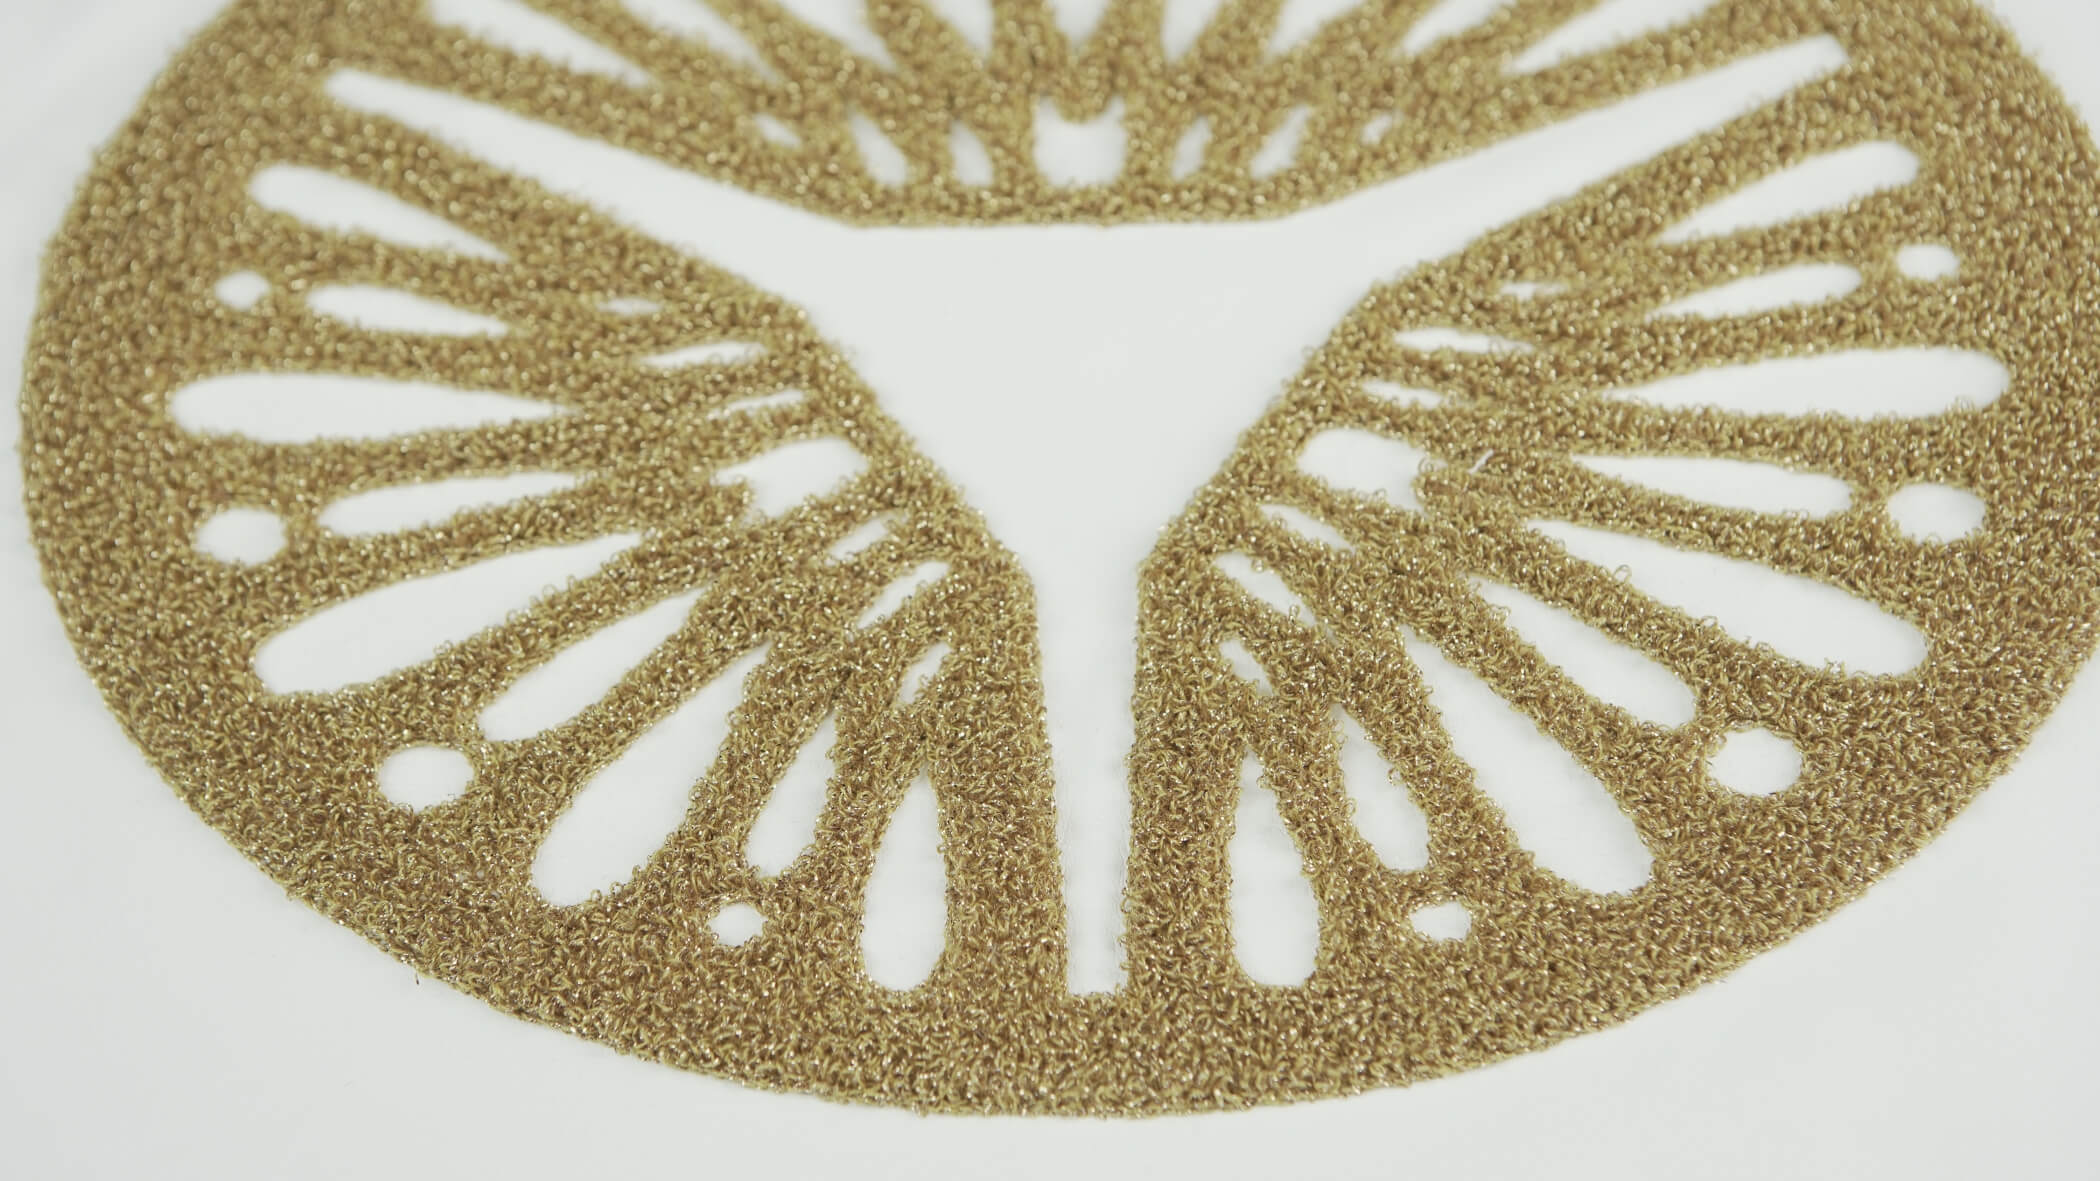 Detalhe de bordado ponto alto, chenille, em dourado, num tecido branco